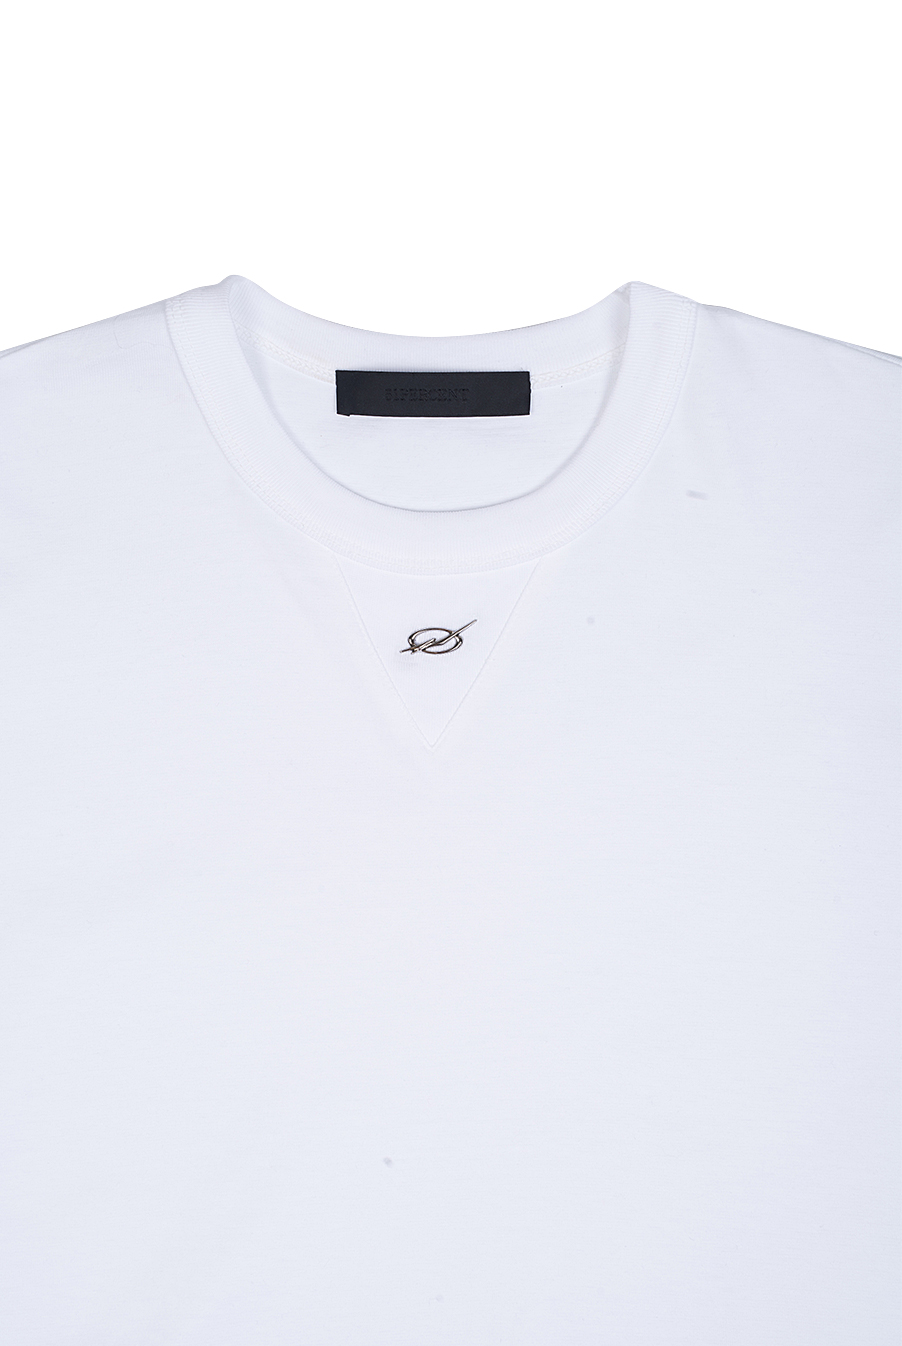 METAL Logo tshirt -WHITE